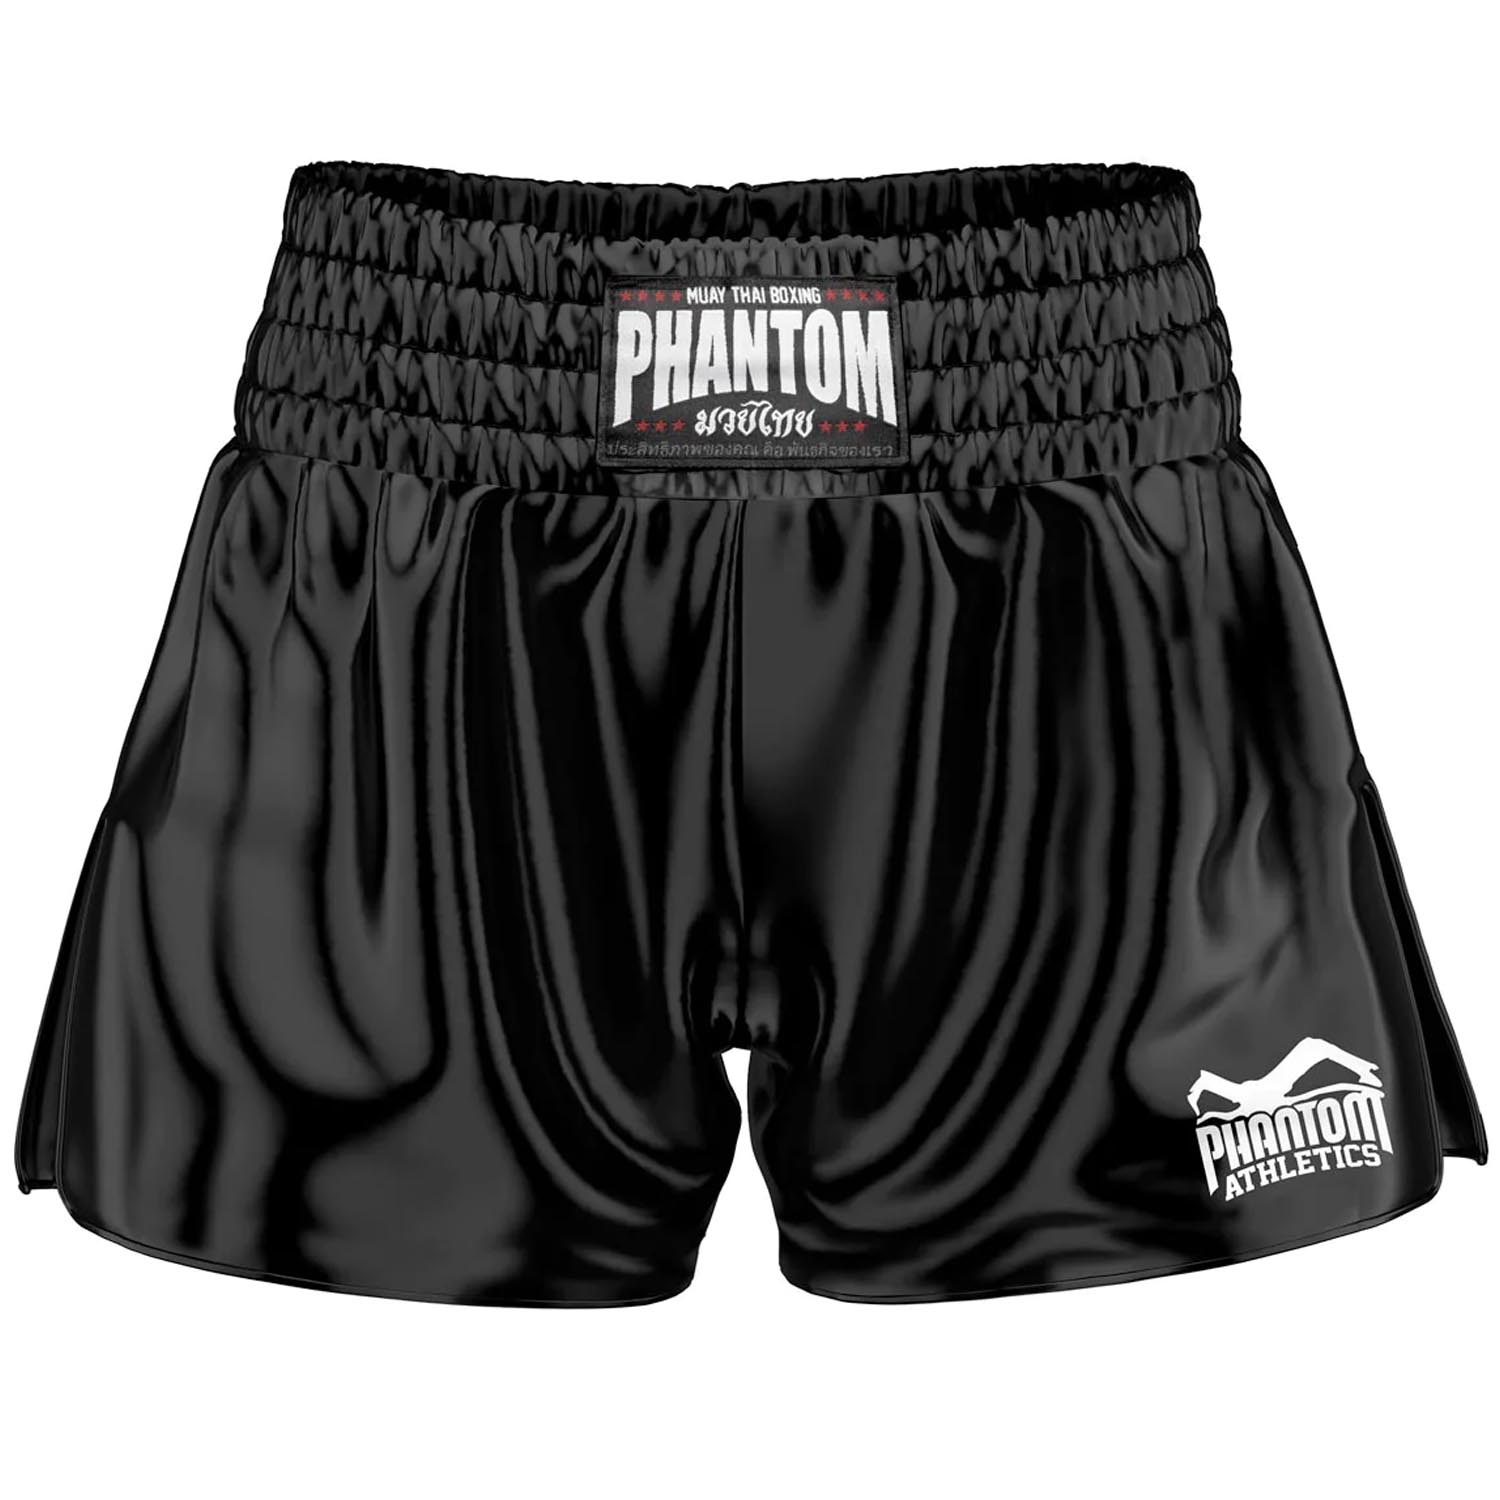 Phantom Athletics Muay Thai Shorts, Team, black, L